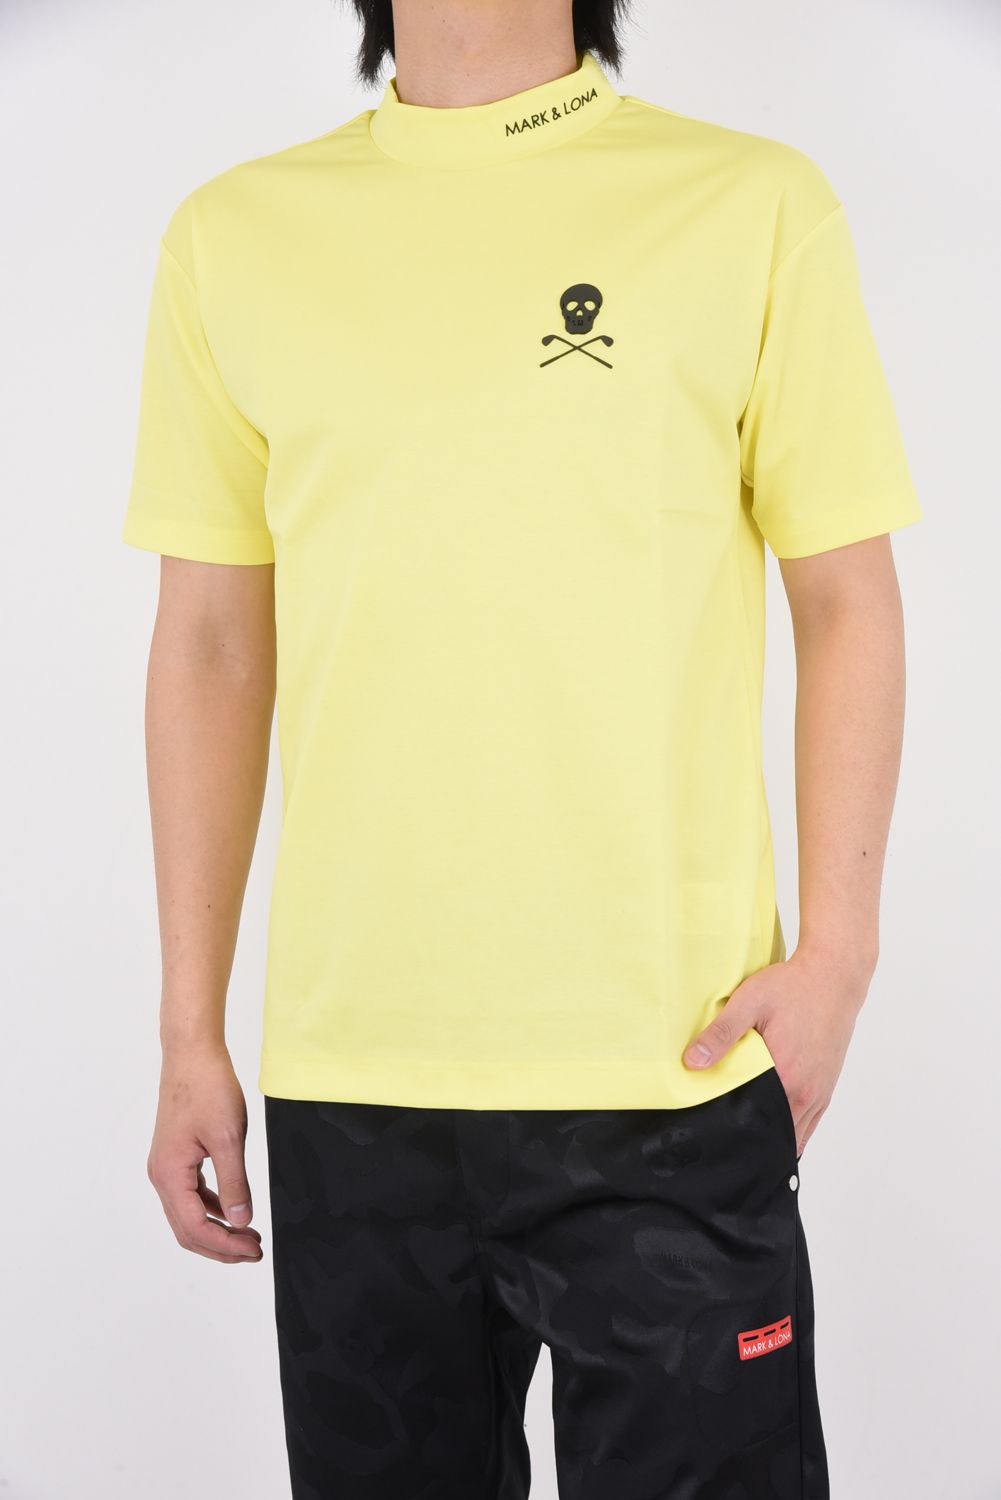 人気商品は なおき様 専用 モックネックシャツ サイズ:50（XL） MARKLONA - ウエア(男性用)